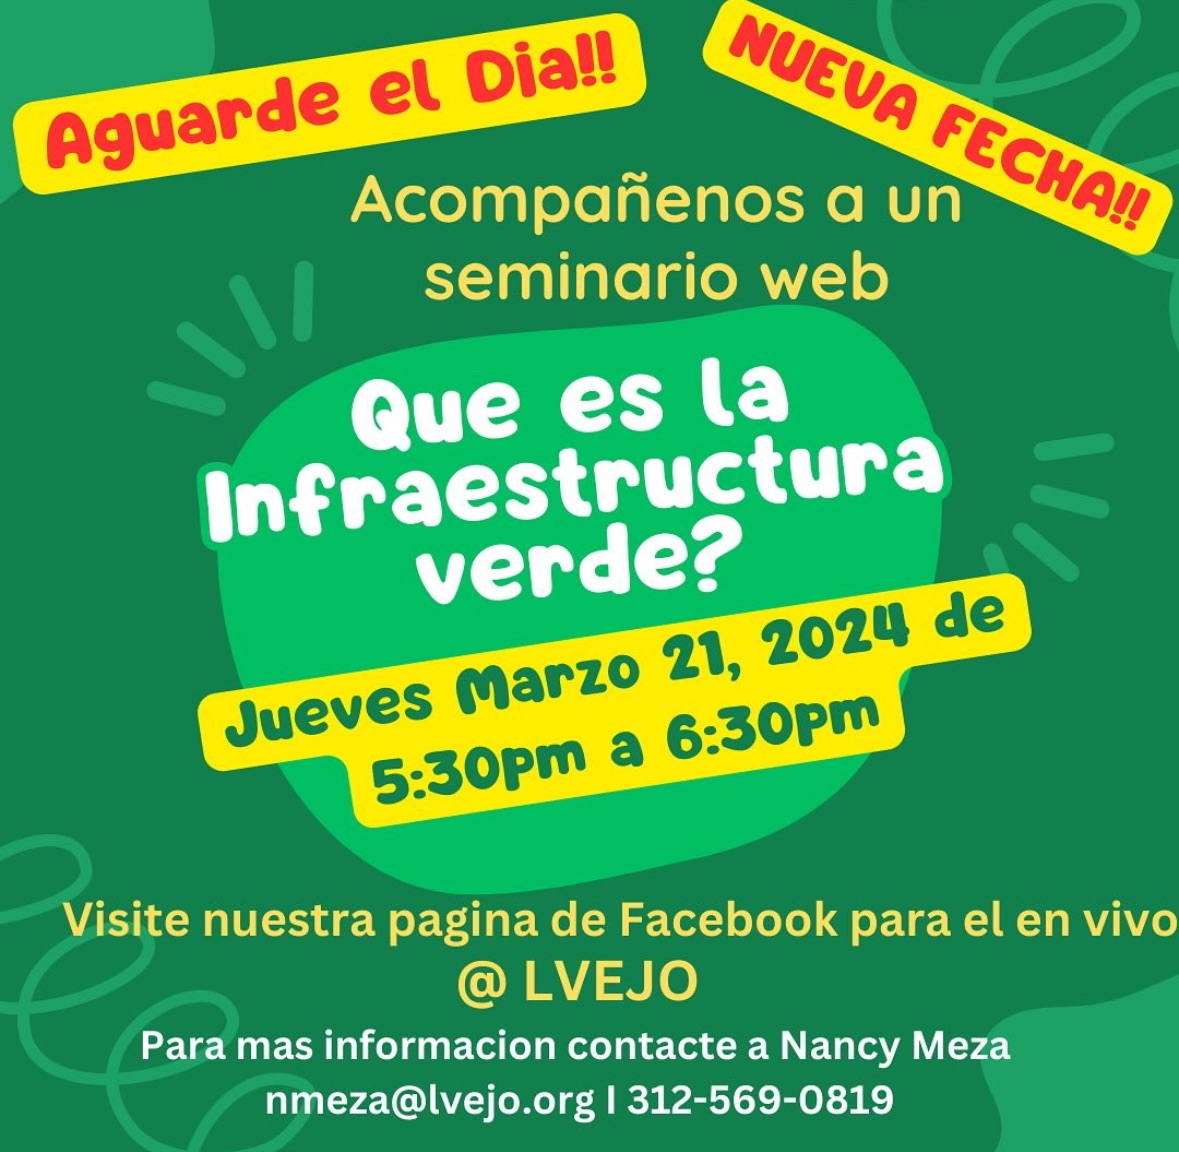 ¿Que es la infraestructura verde? Aprender acerca de la infraestructura verde hoy a las 5:30pm en español y la próxima semana (3/27) en inglés. Para más información visite @LVEJO y fb.me/e/4m8lGk2tO